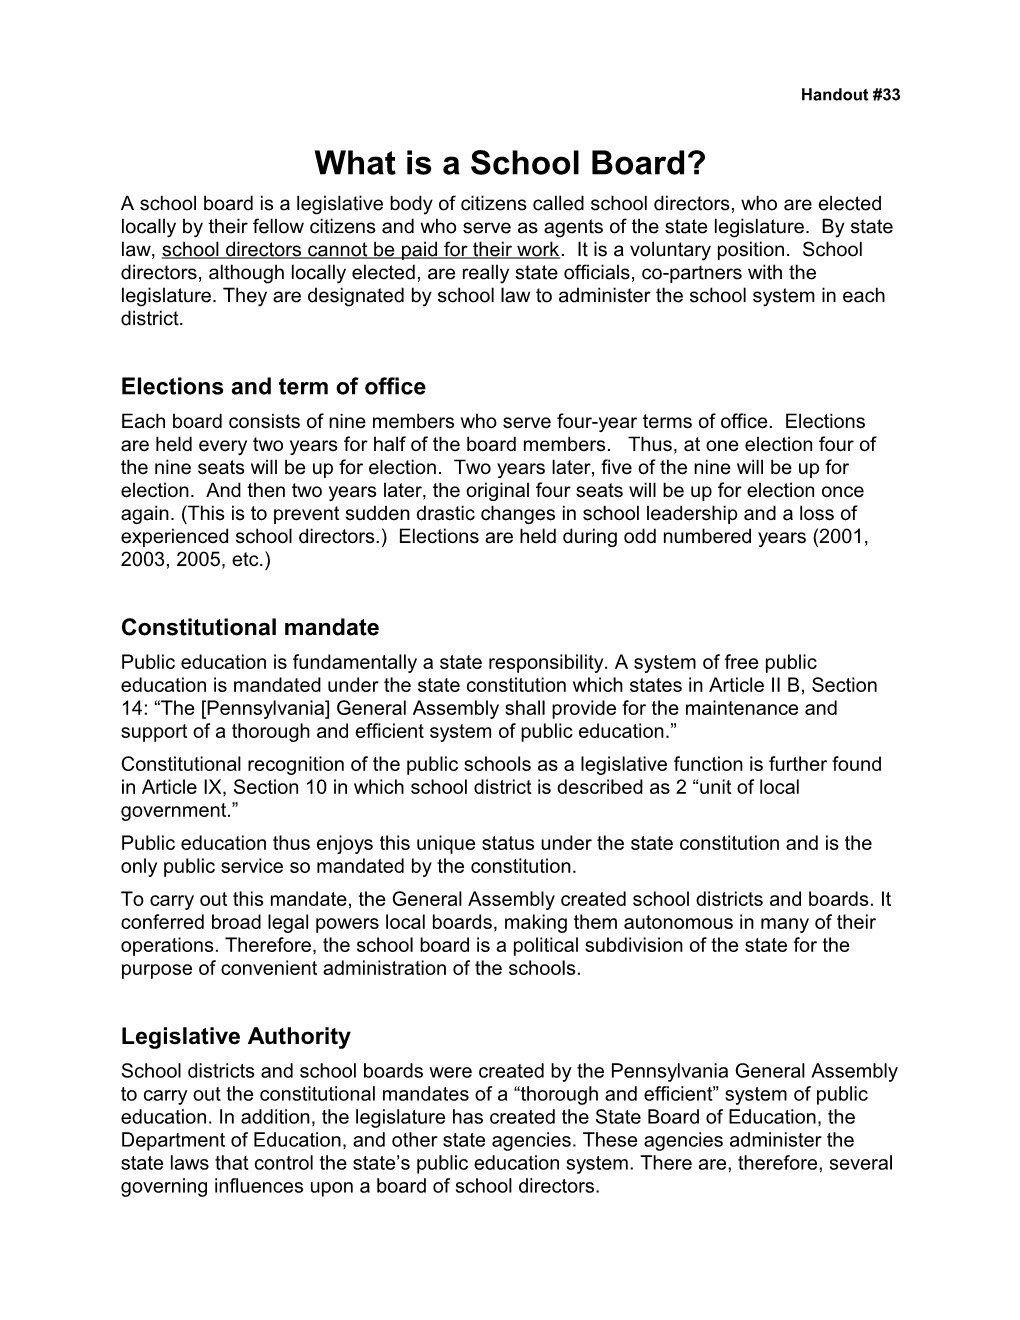 What Is a School Board